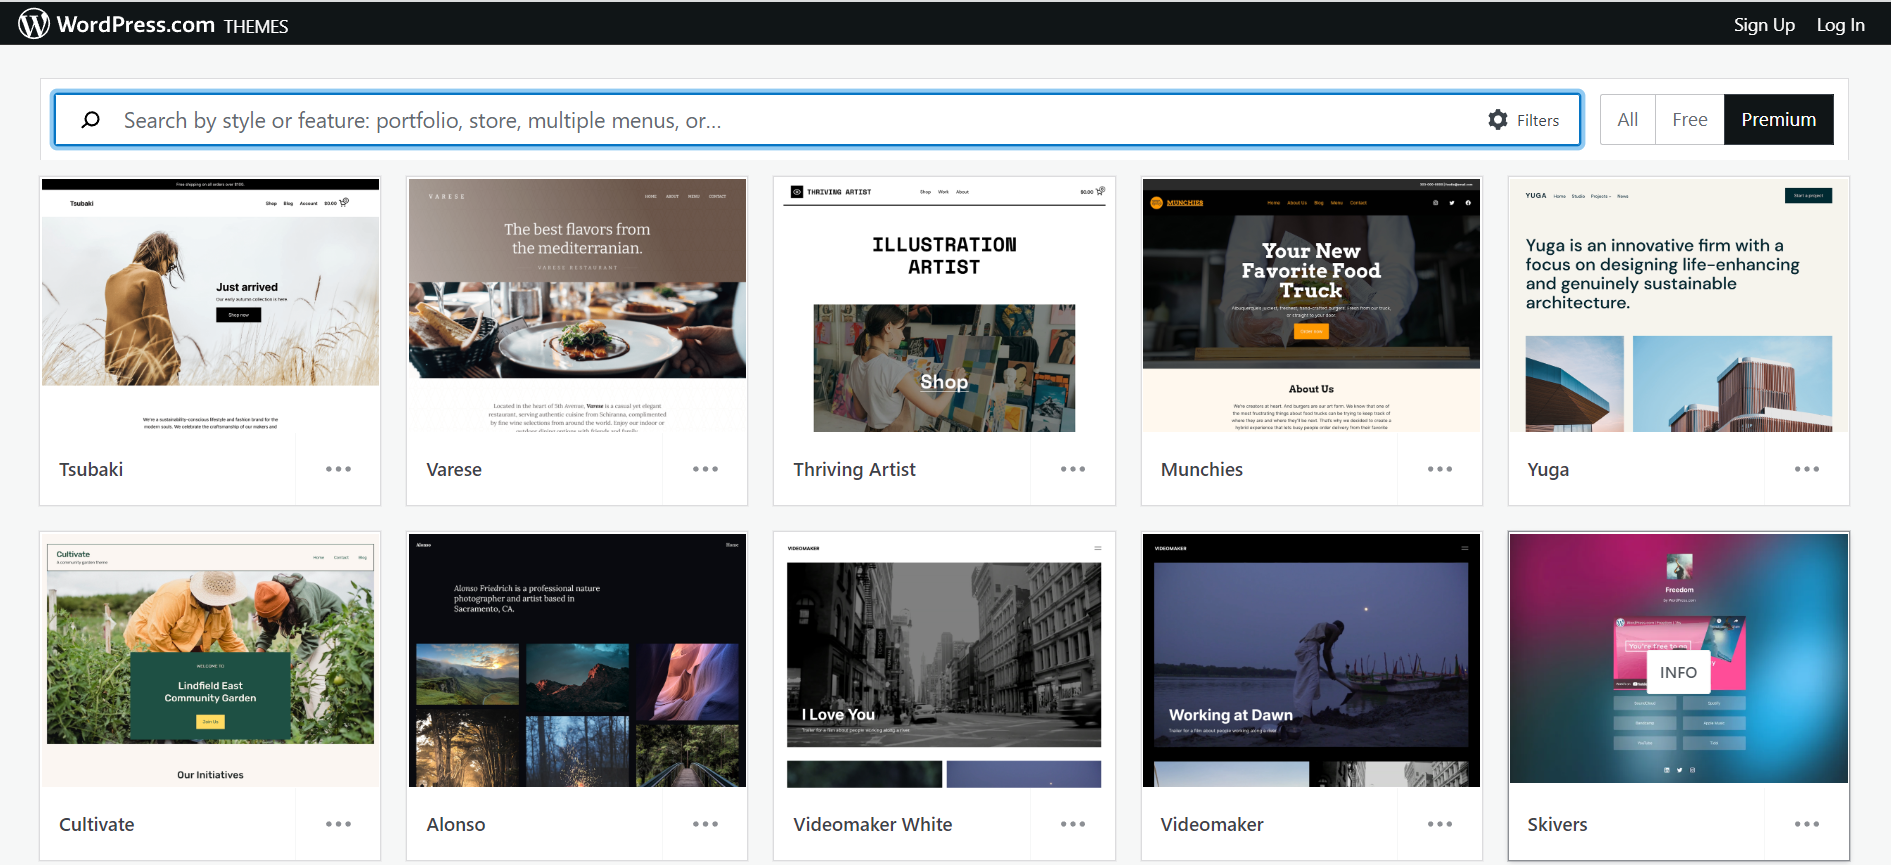 WordPress te ofrece una serie de plantillas entre las que puedes escoger para darle estructura a tu sitio web.